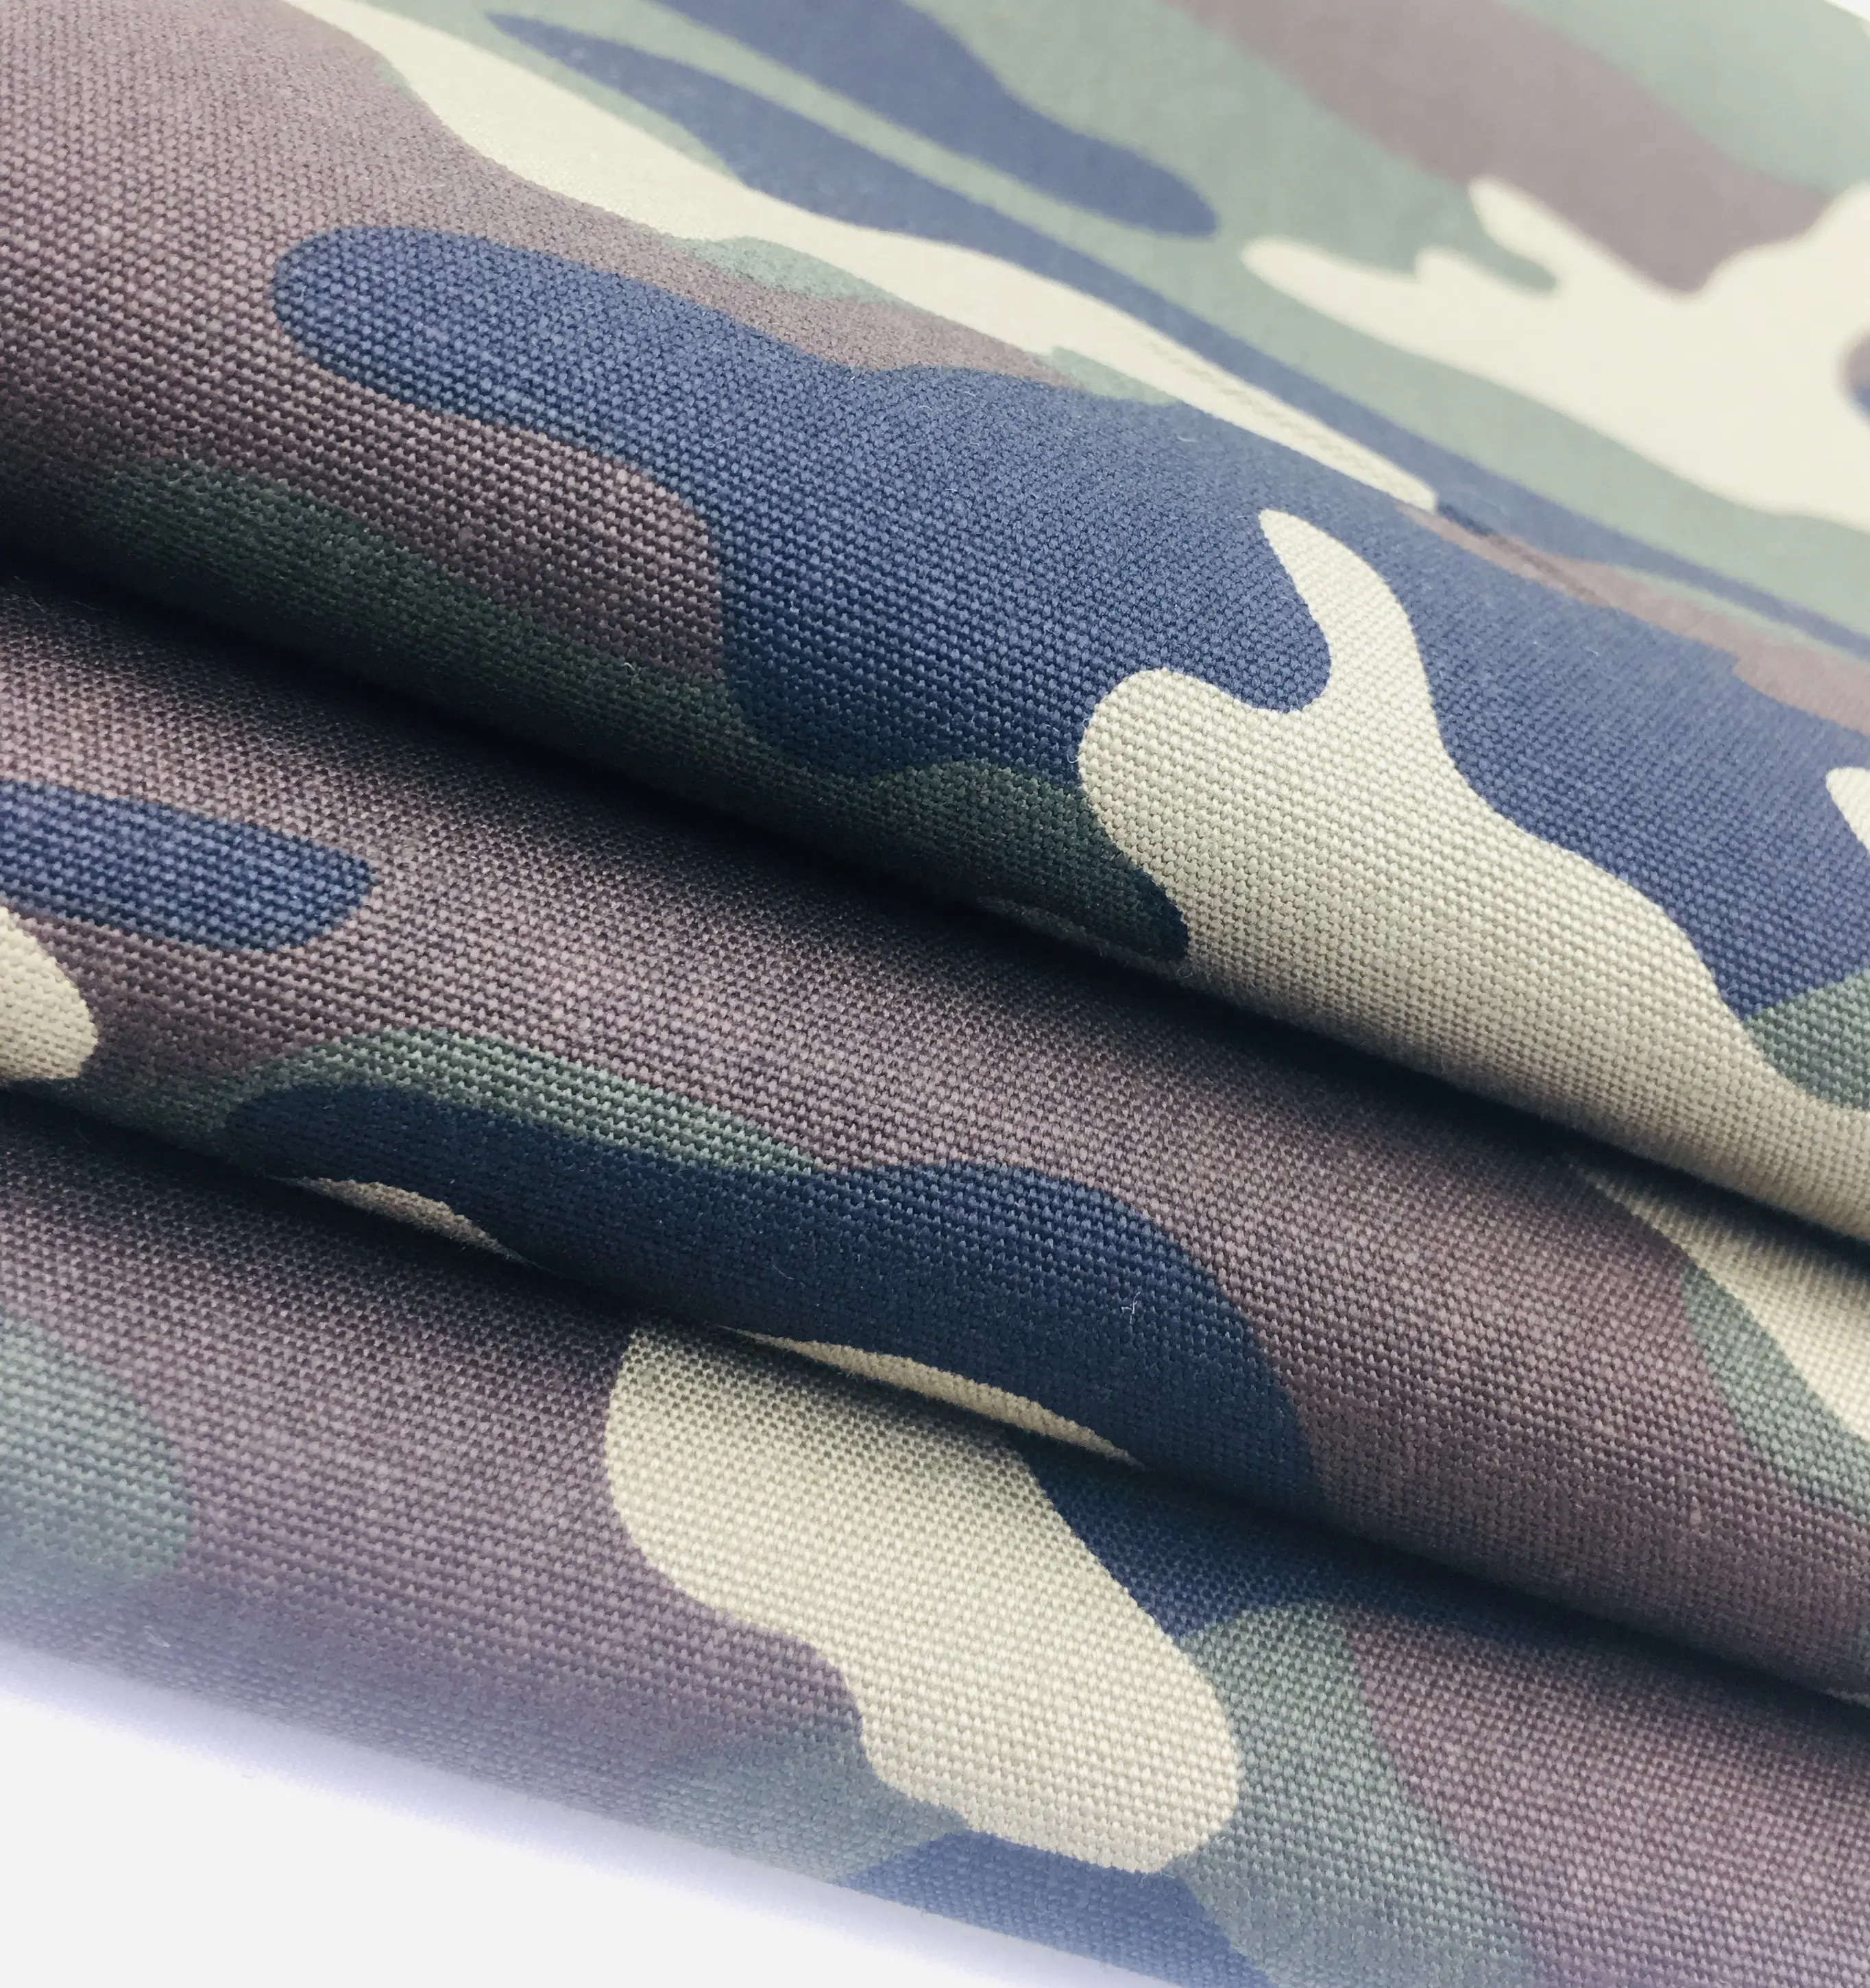 Personalizzato Camouflage Stampato Tela di canapa Tinta Unita In Cotone 100% Tessuto